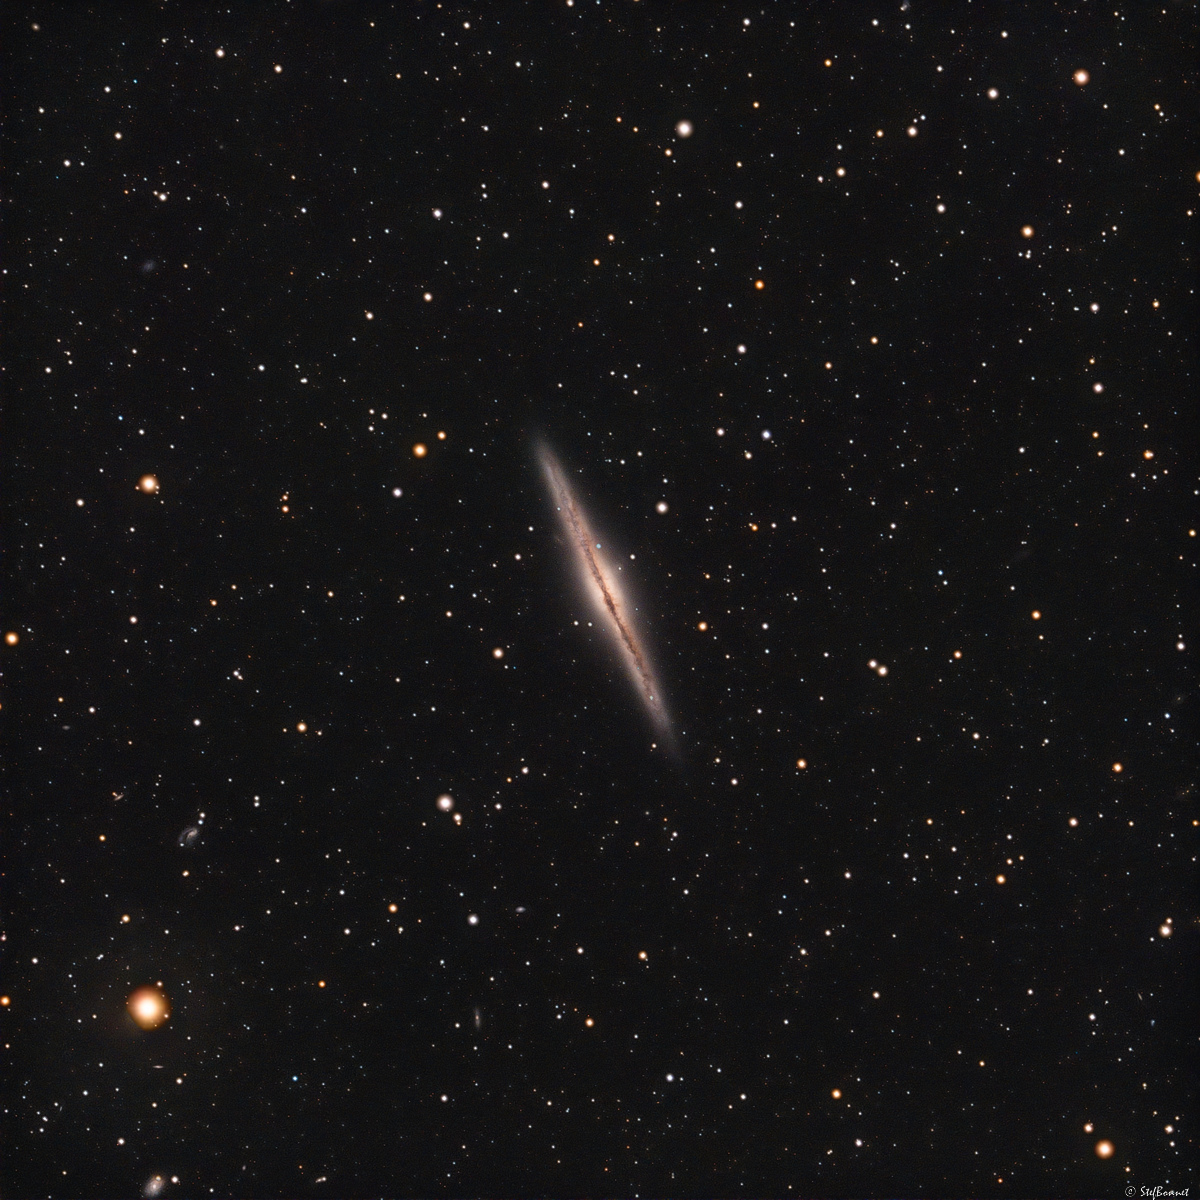 638a64a02200d_NGC891-Web.jpg.fe60844c54e6a750c34e1a326cc991cb.jpg